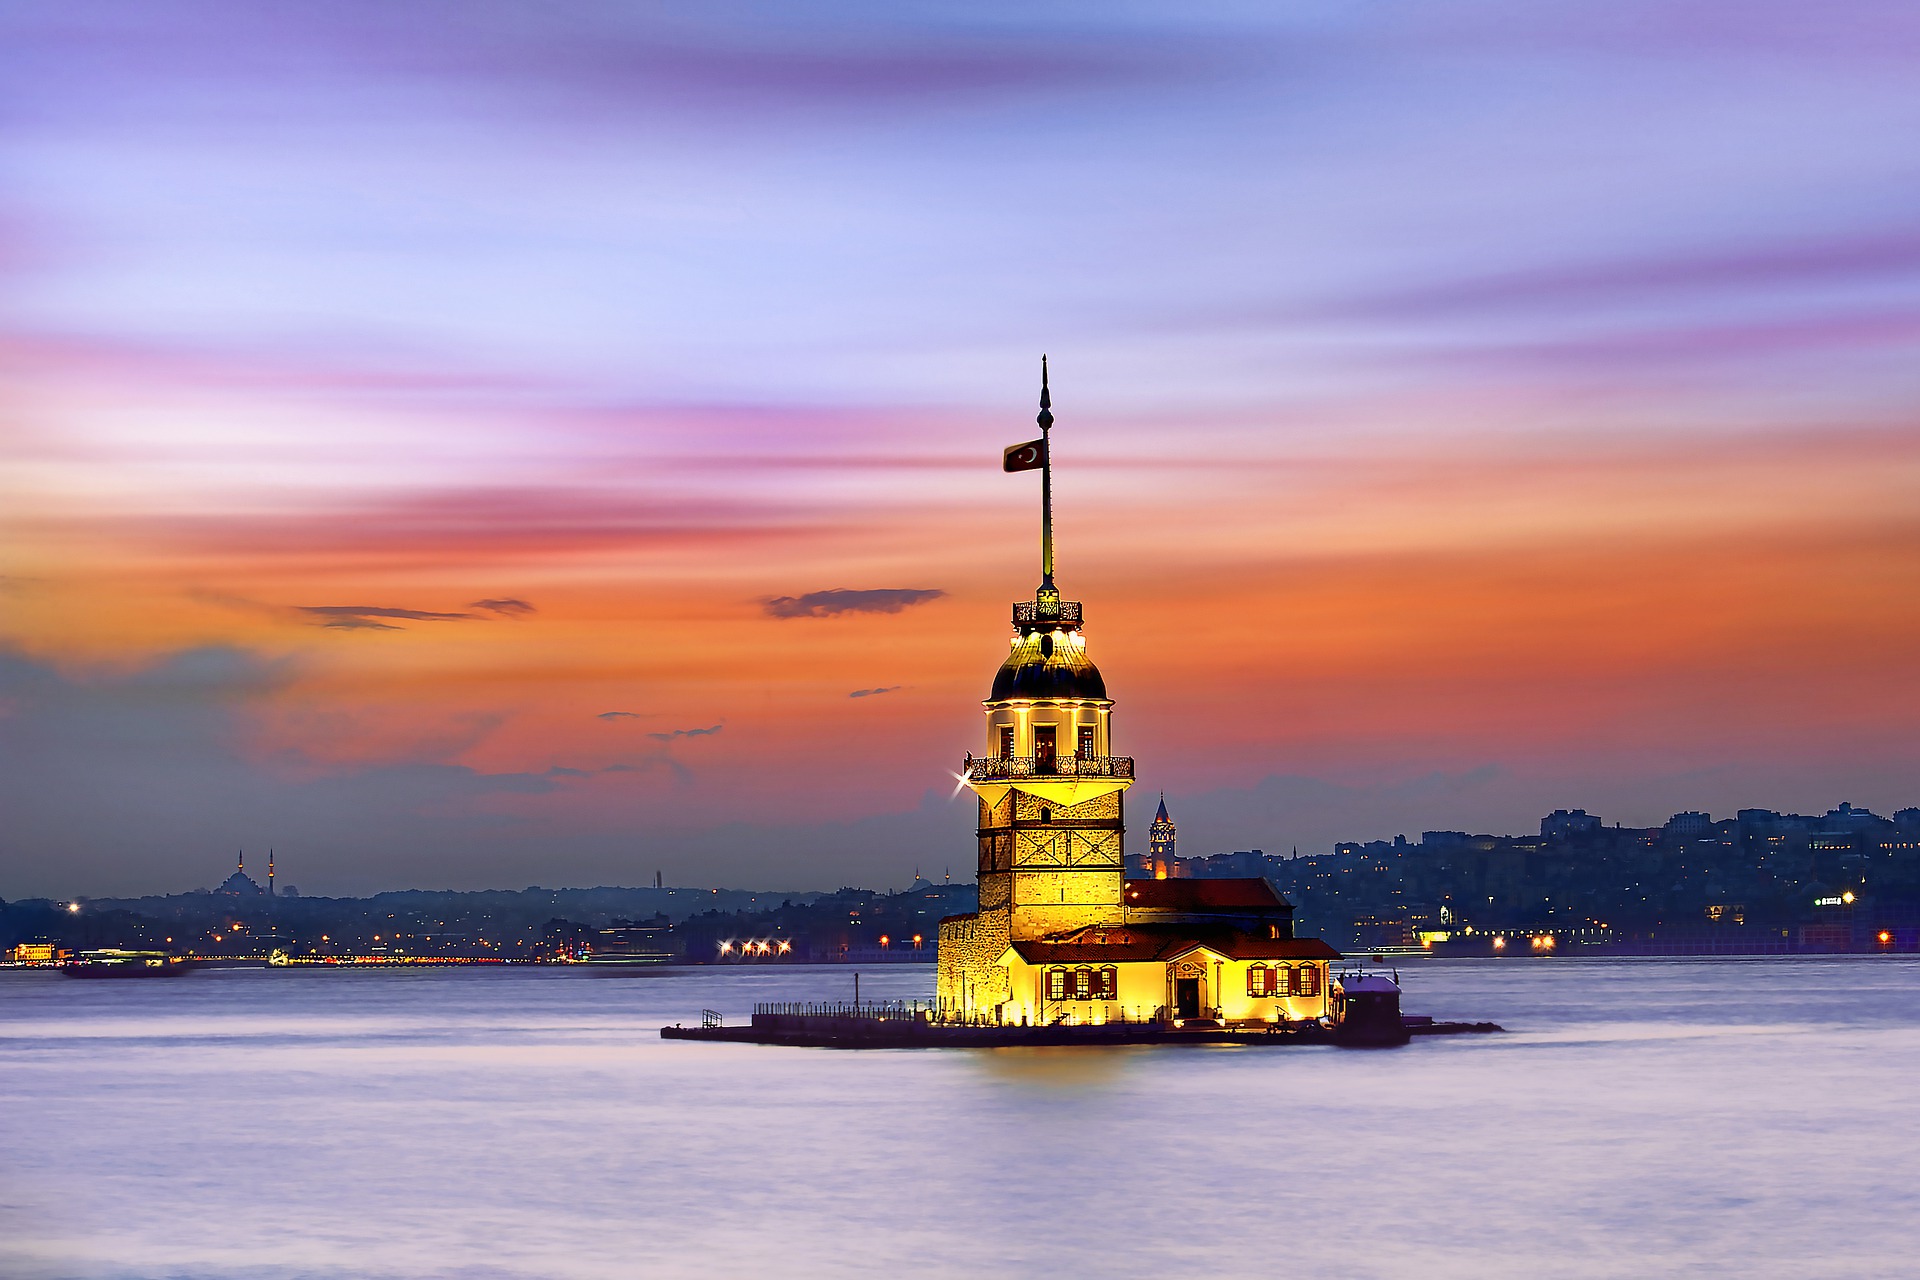 Turnul fecioarei, construit pe Marea Marmara, este unul din simbolurile orașului Istanbul Sursa foto: Pixabay.com